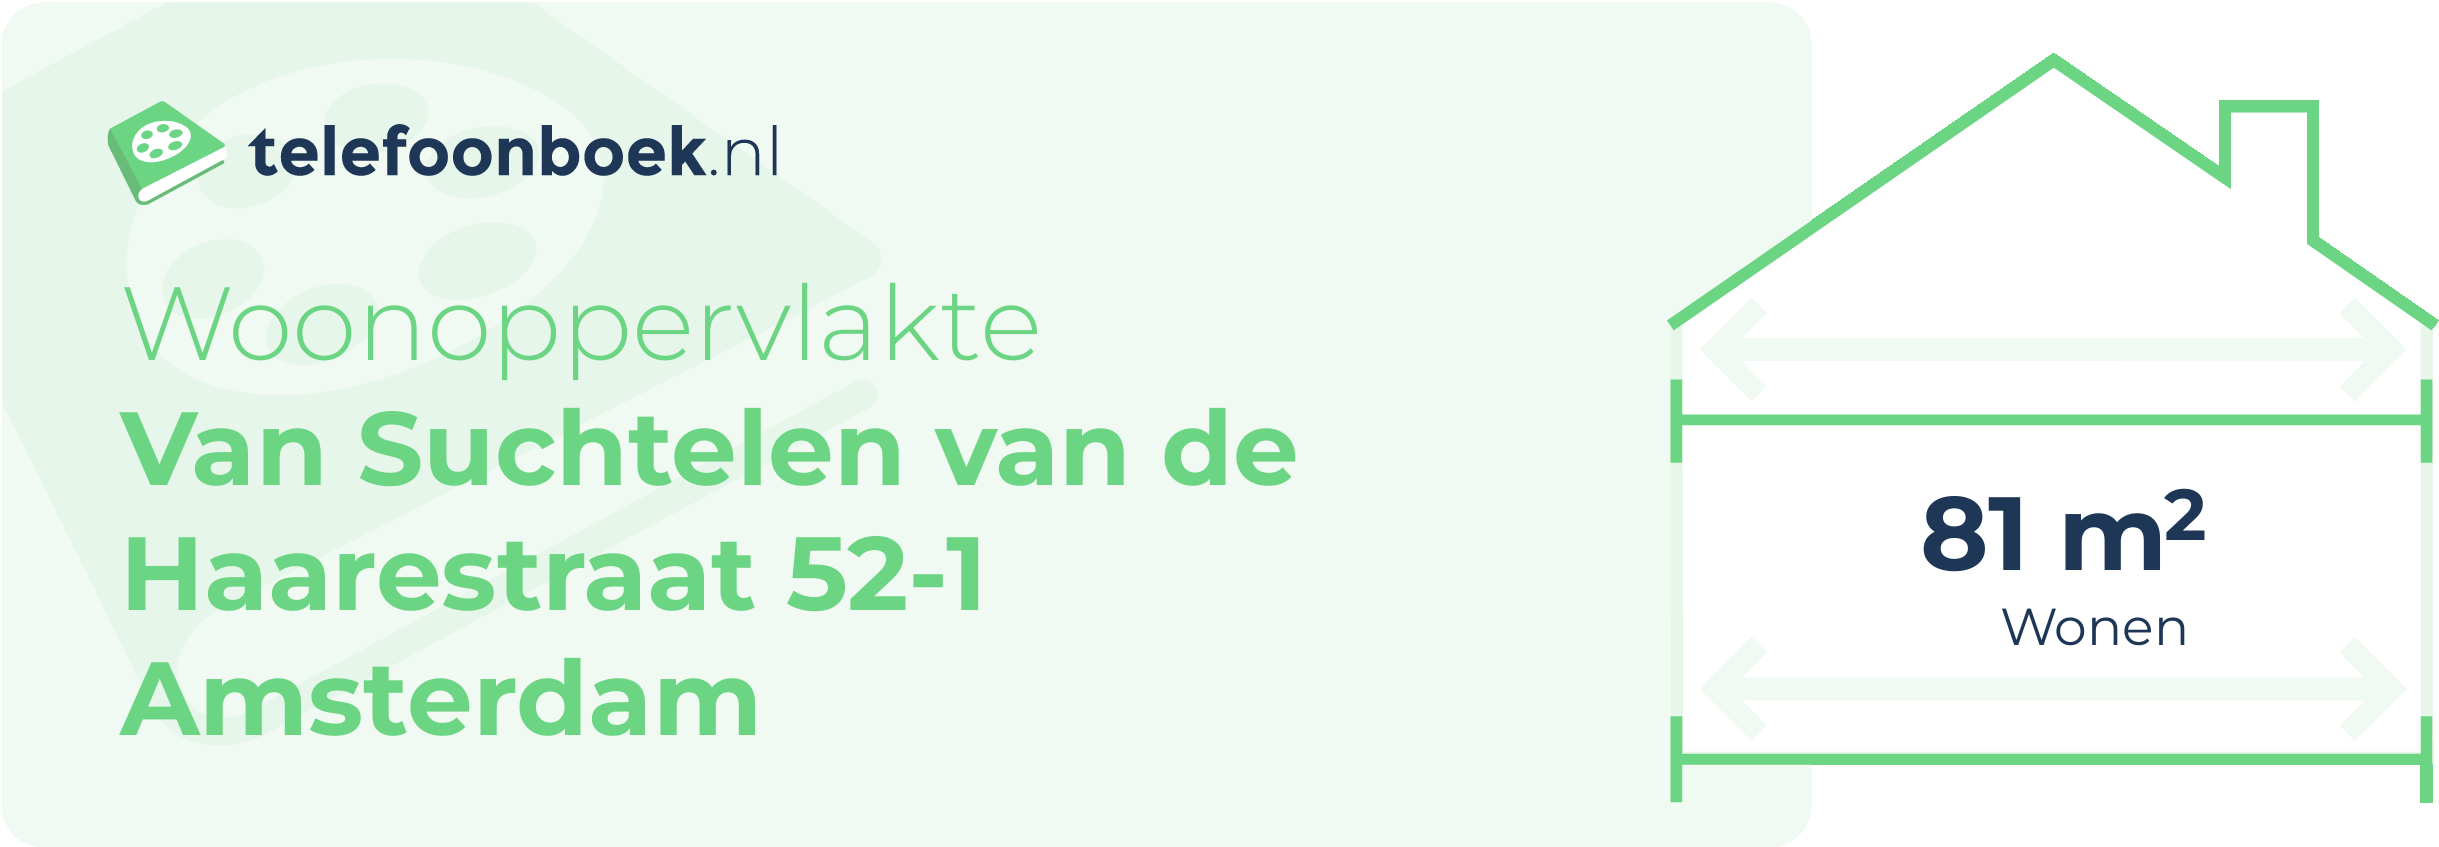 Woonoppervlakte Van Suchtelen Van De Haarestraat 52-1 Amsterdam